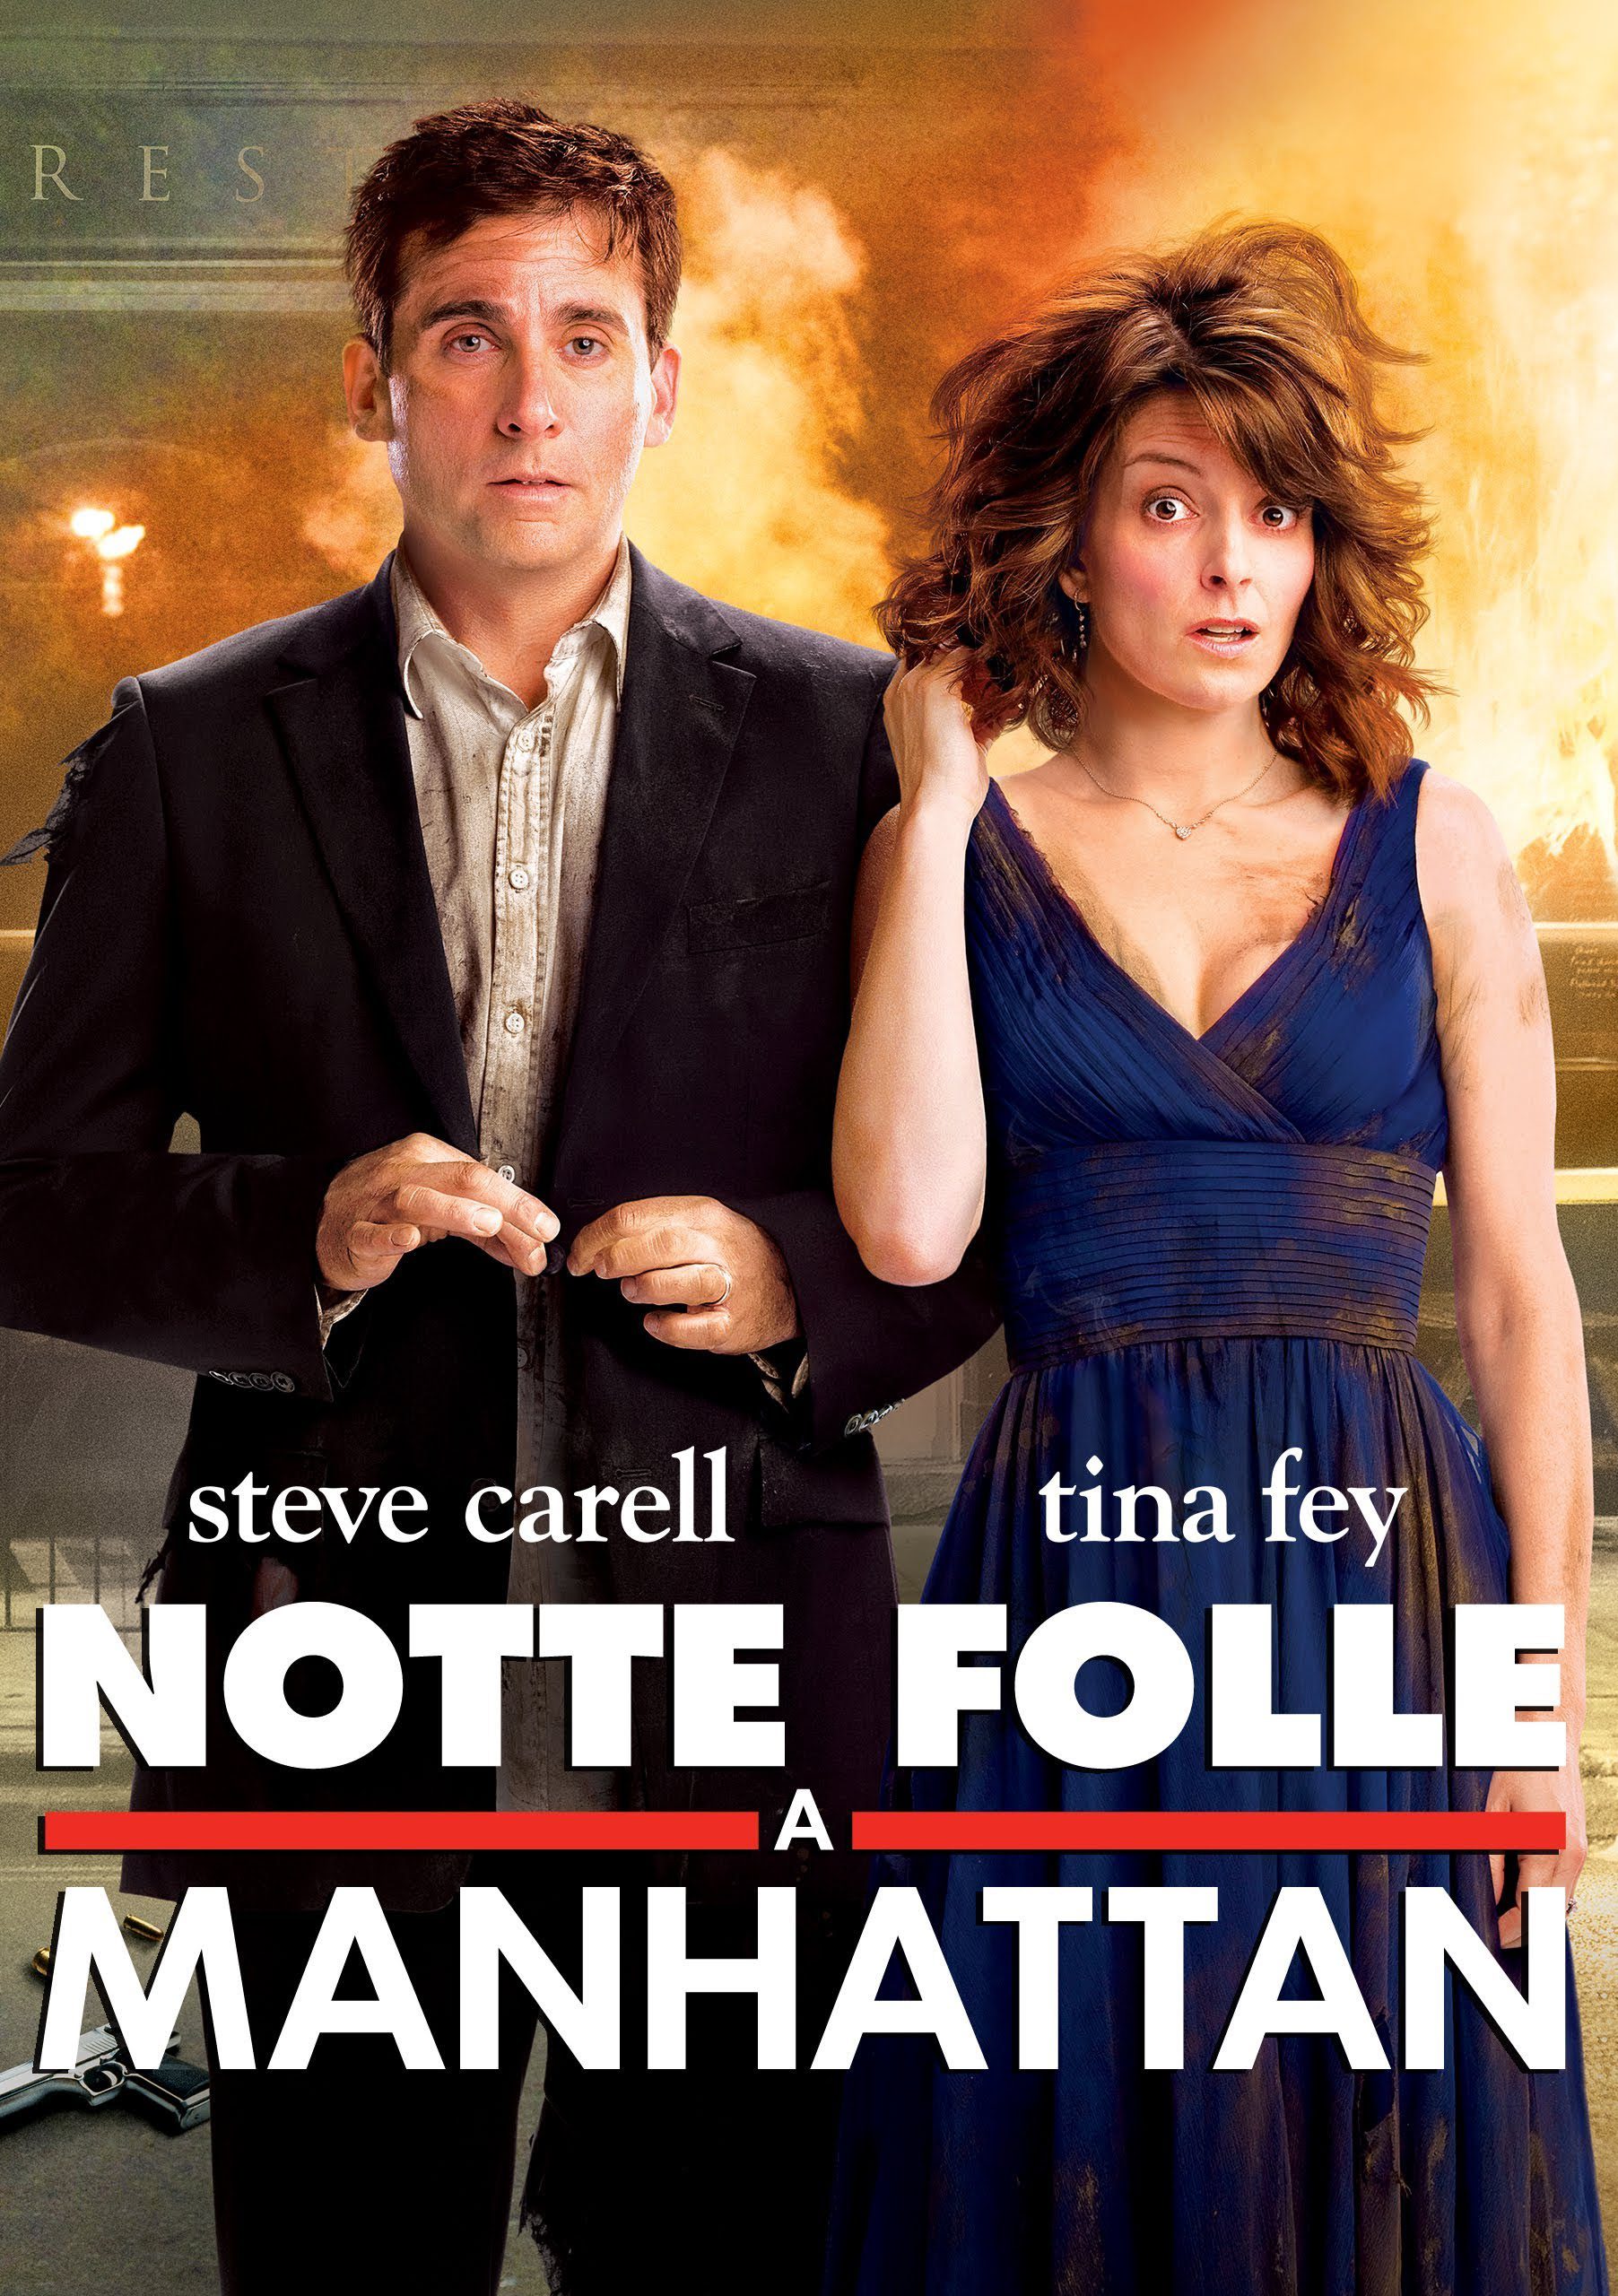 Notte folle a Manhattan [HD] (2010)